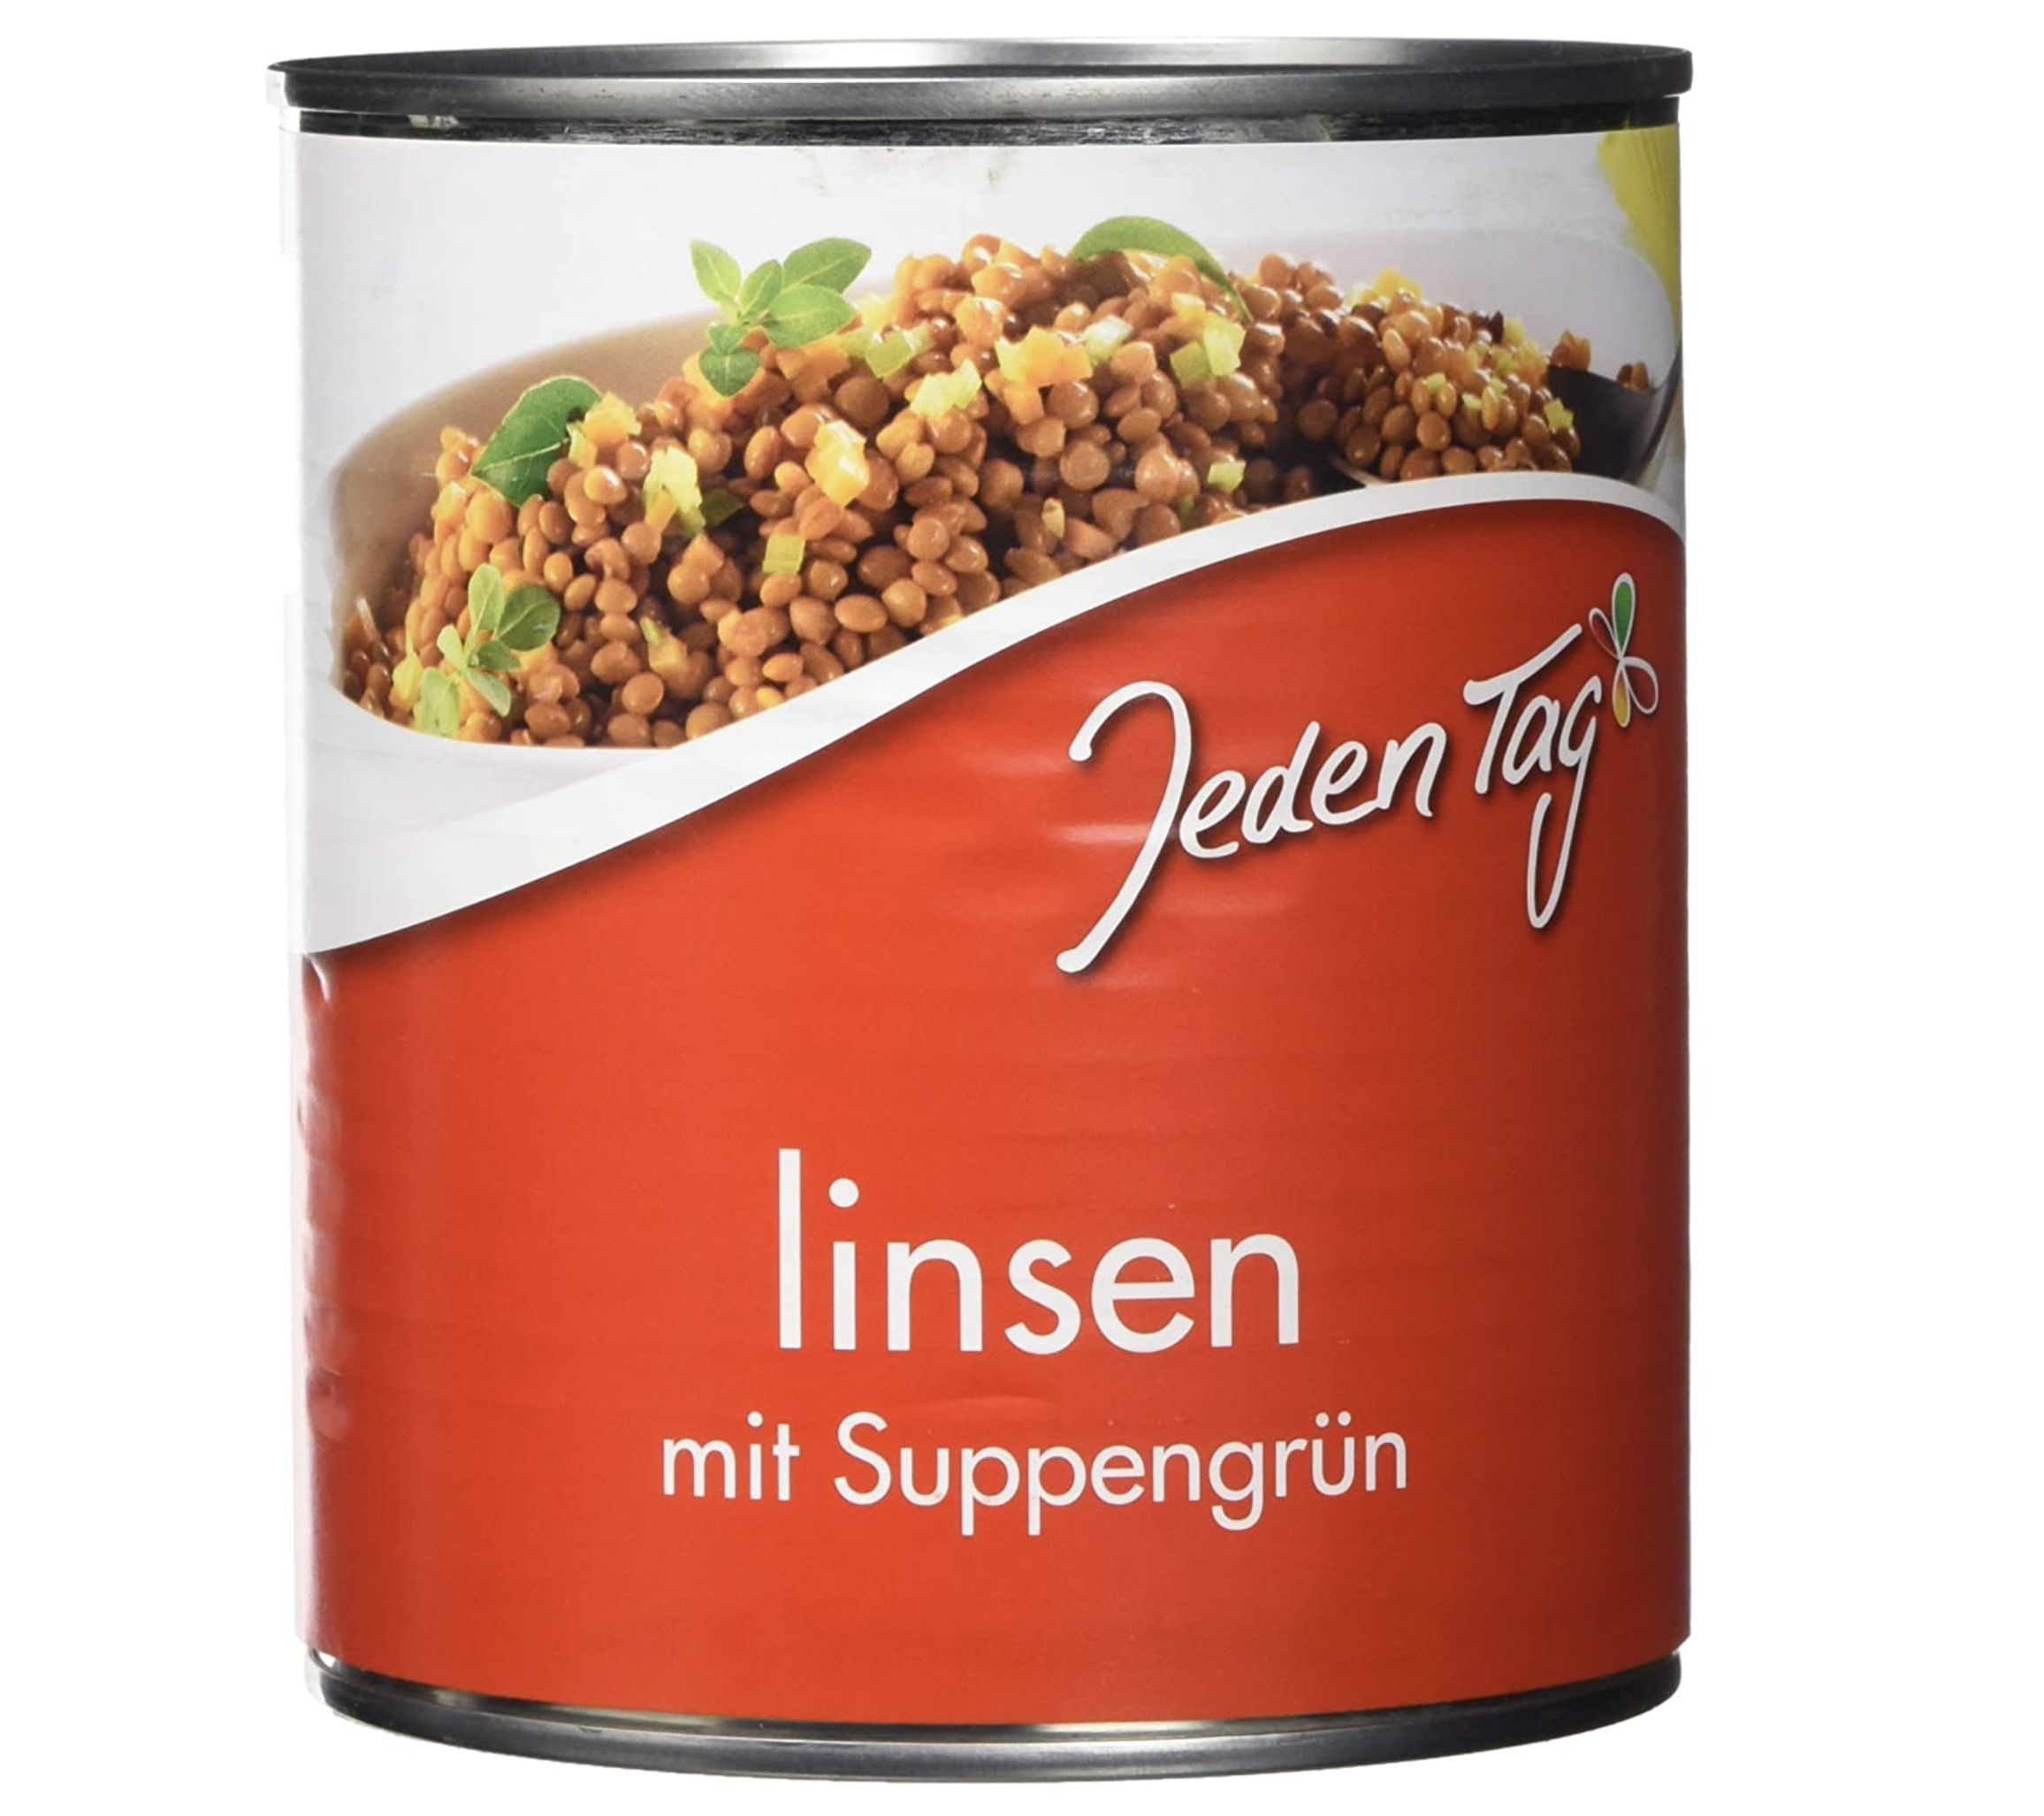 800g Jeden Tag Linsen mit Suppengrün für 0,89€ &#8211; Prime